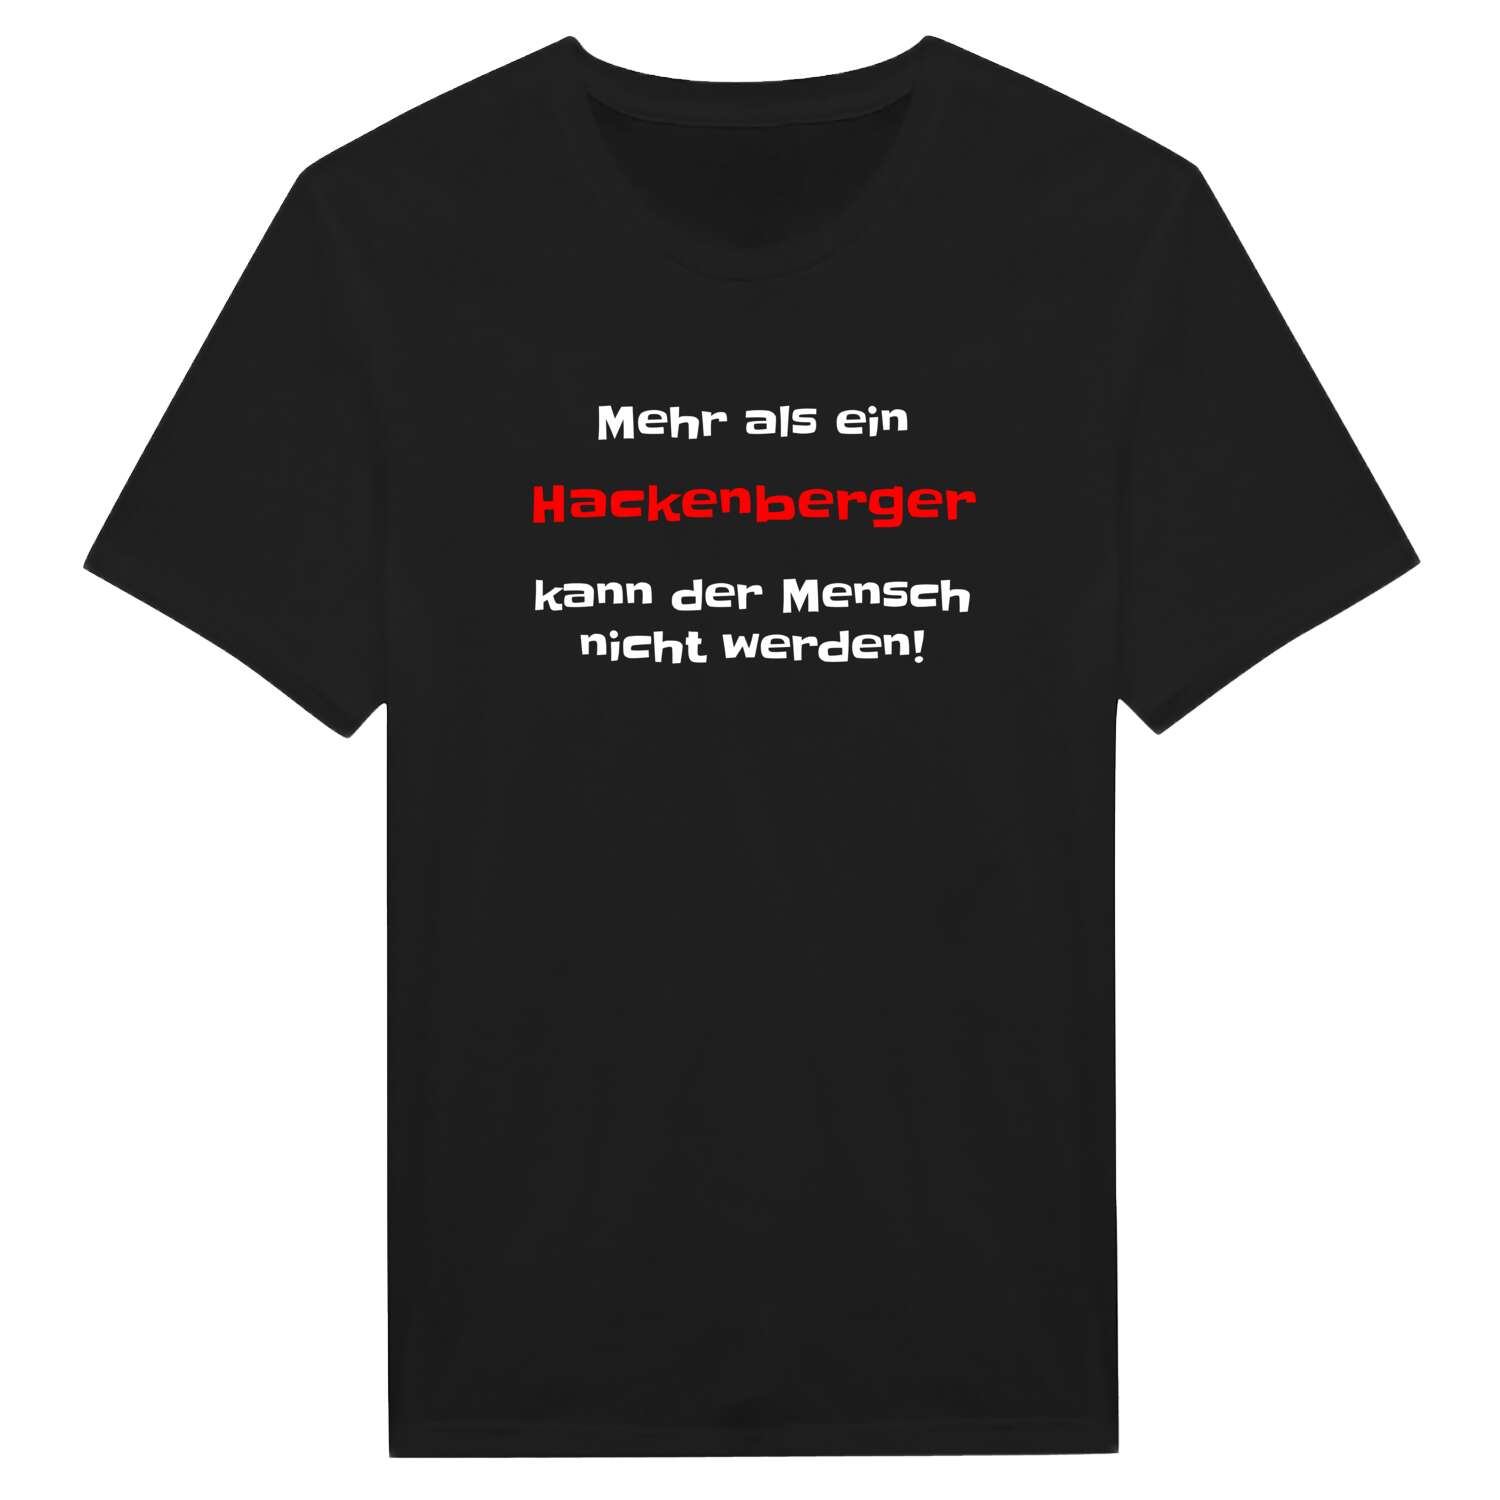 Hackenberg T-Shirt »Mehr als ein«